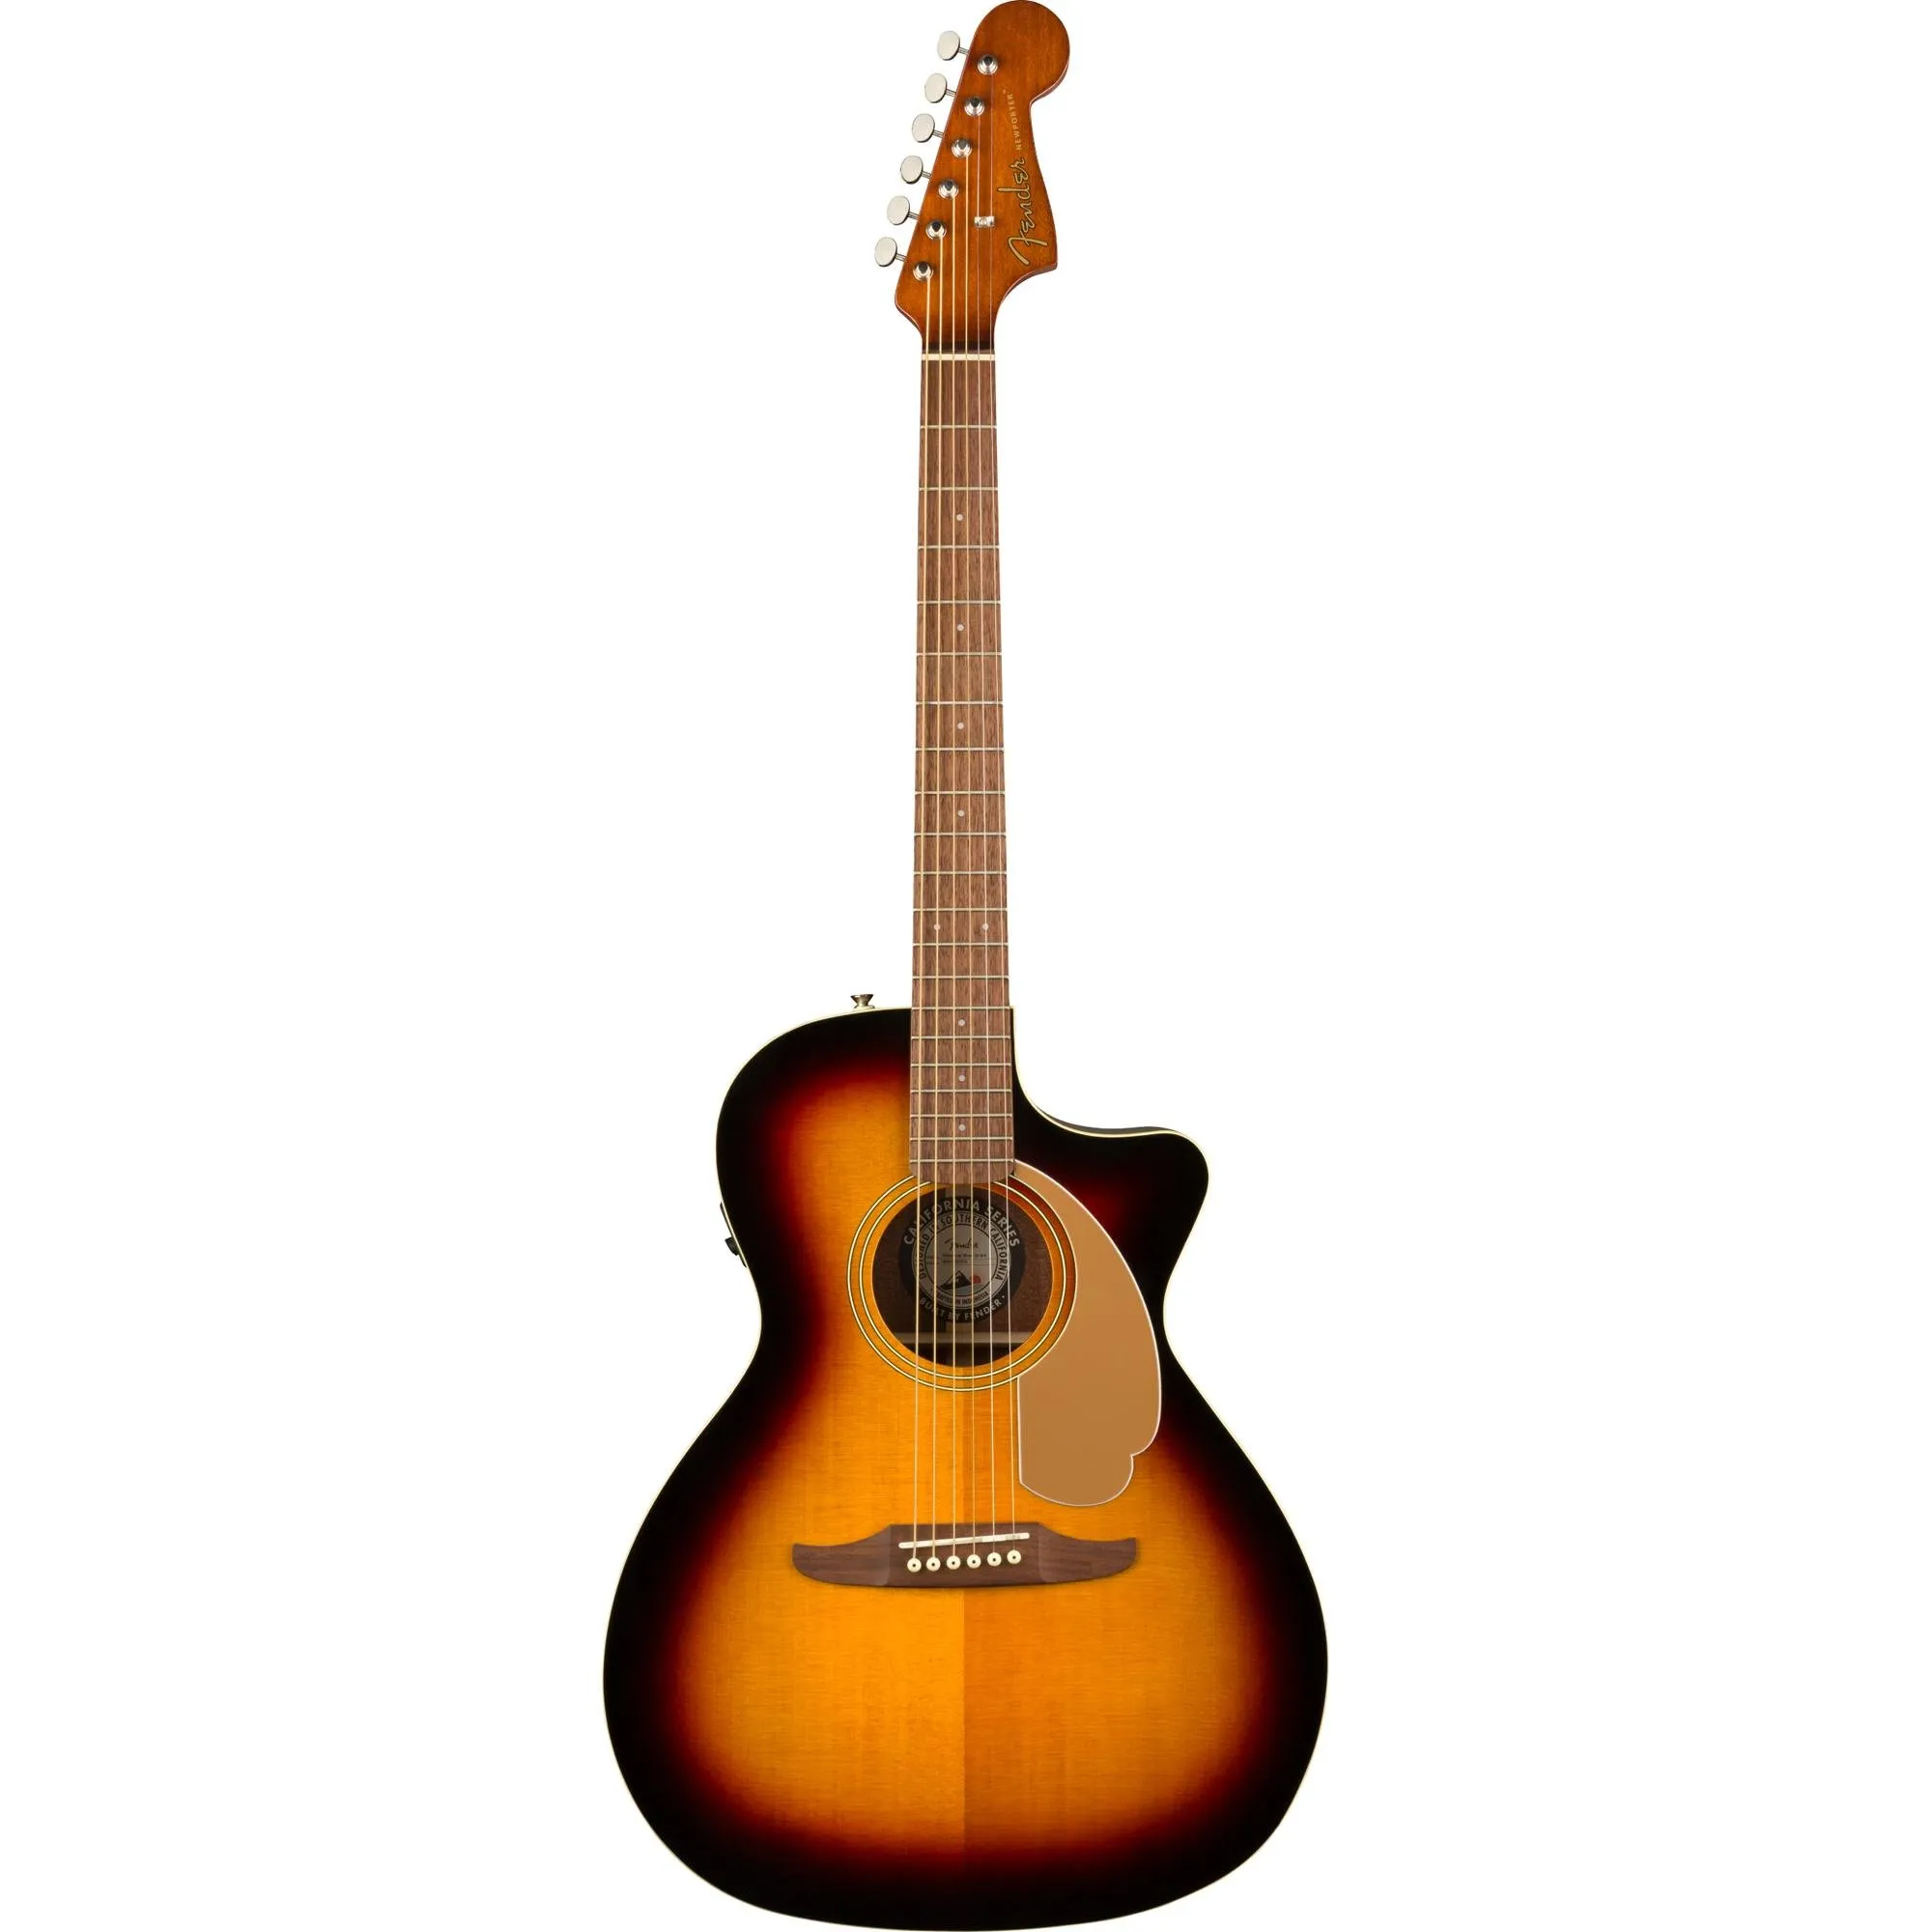 Violão Eletroacústico Fender Newporter Player Sunburst por 3.399,99 à vista no boleto/pix ou parcele em até 12x sem juros. Compre na loja Mundomax!